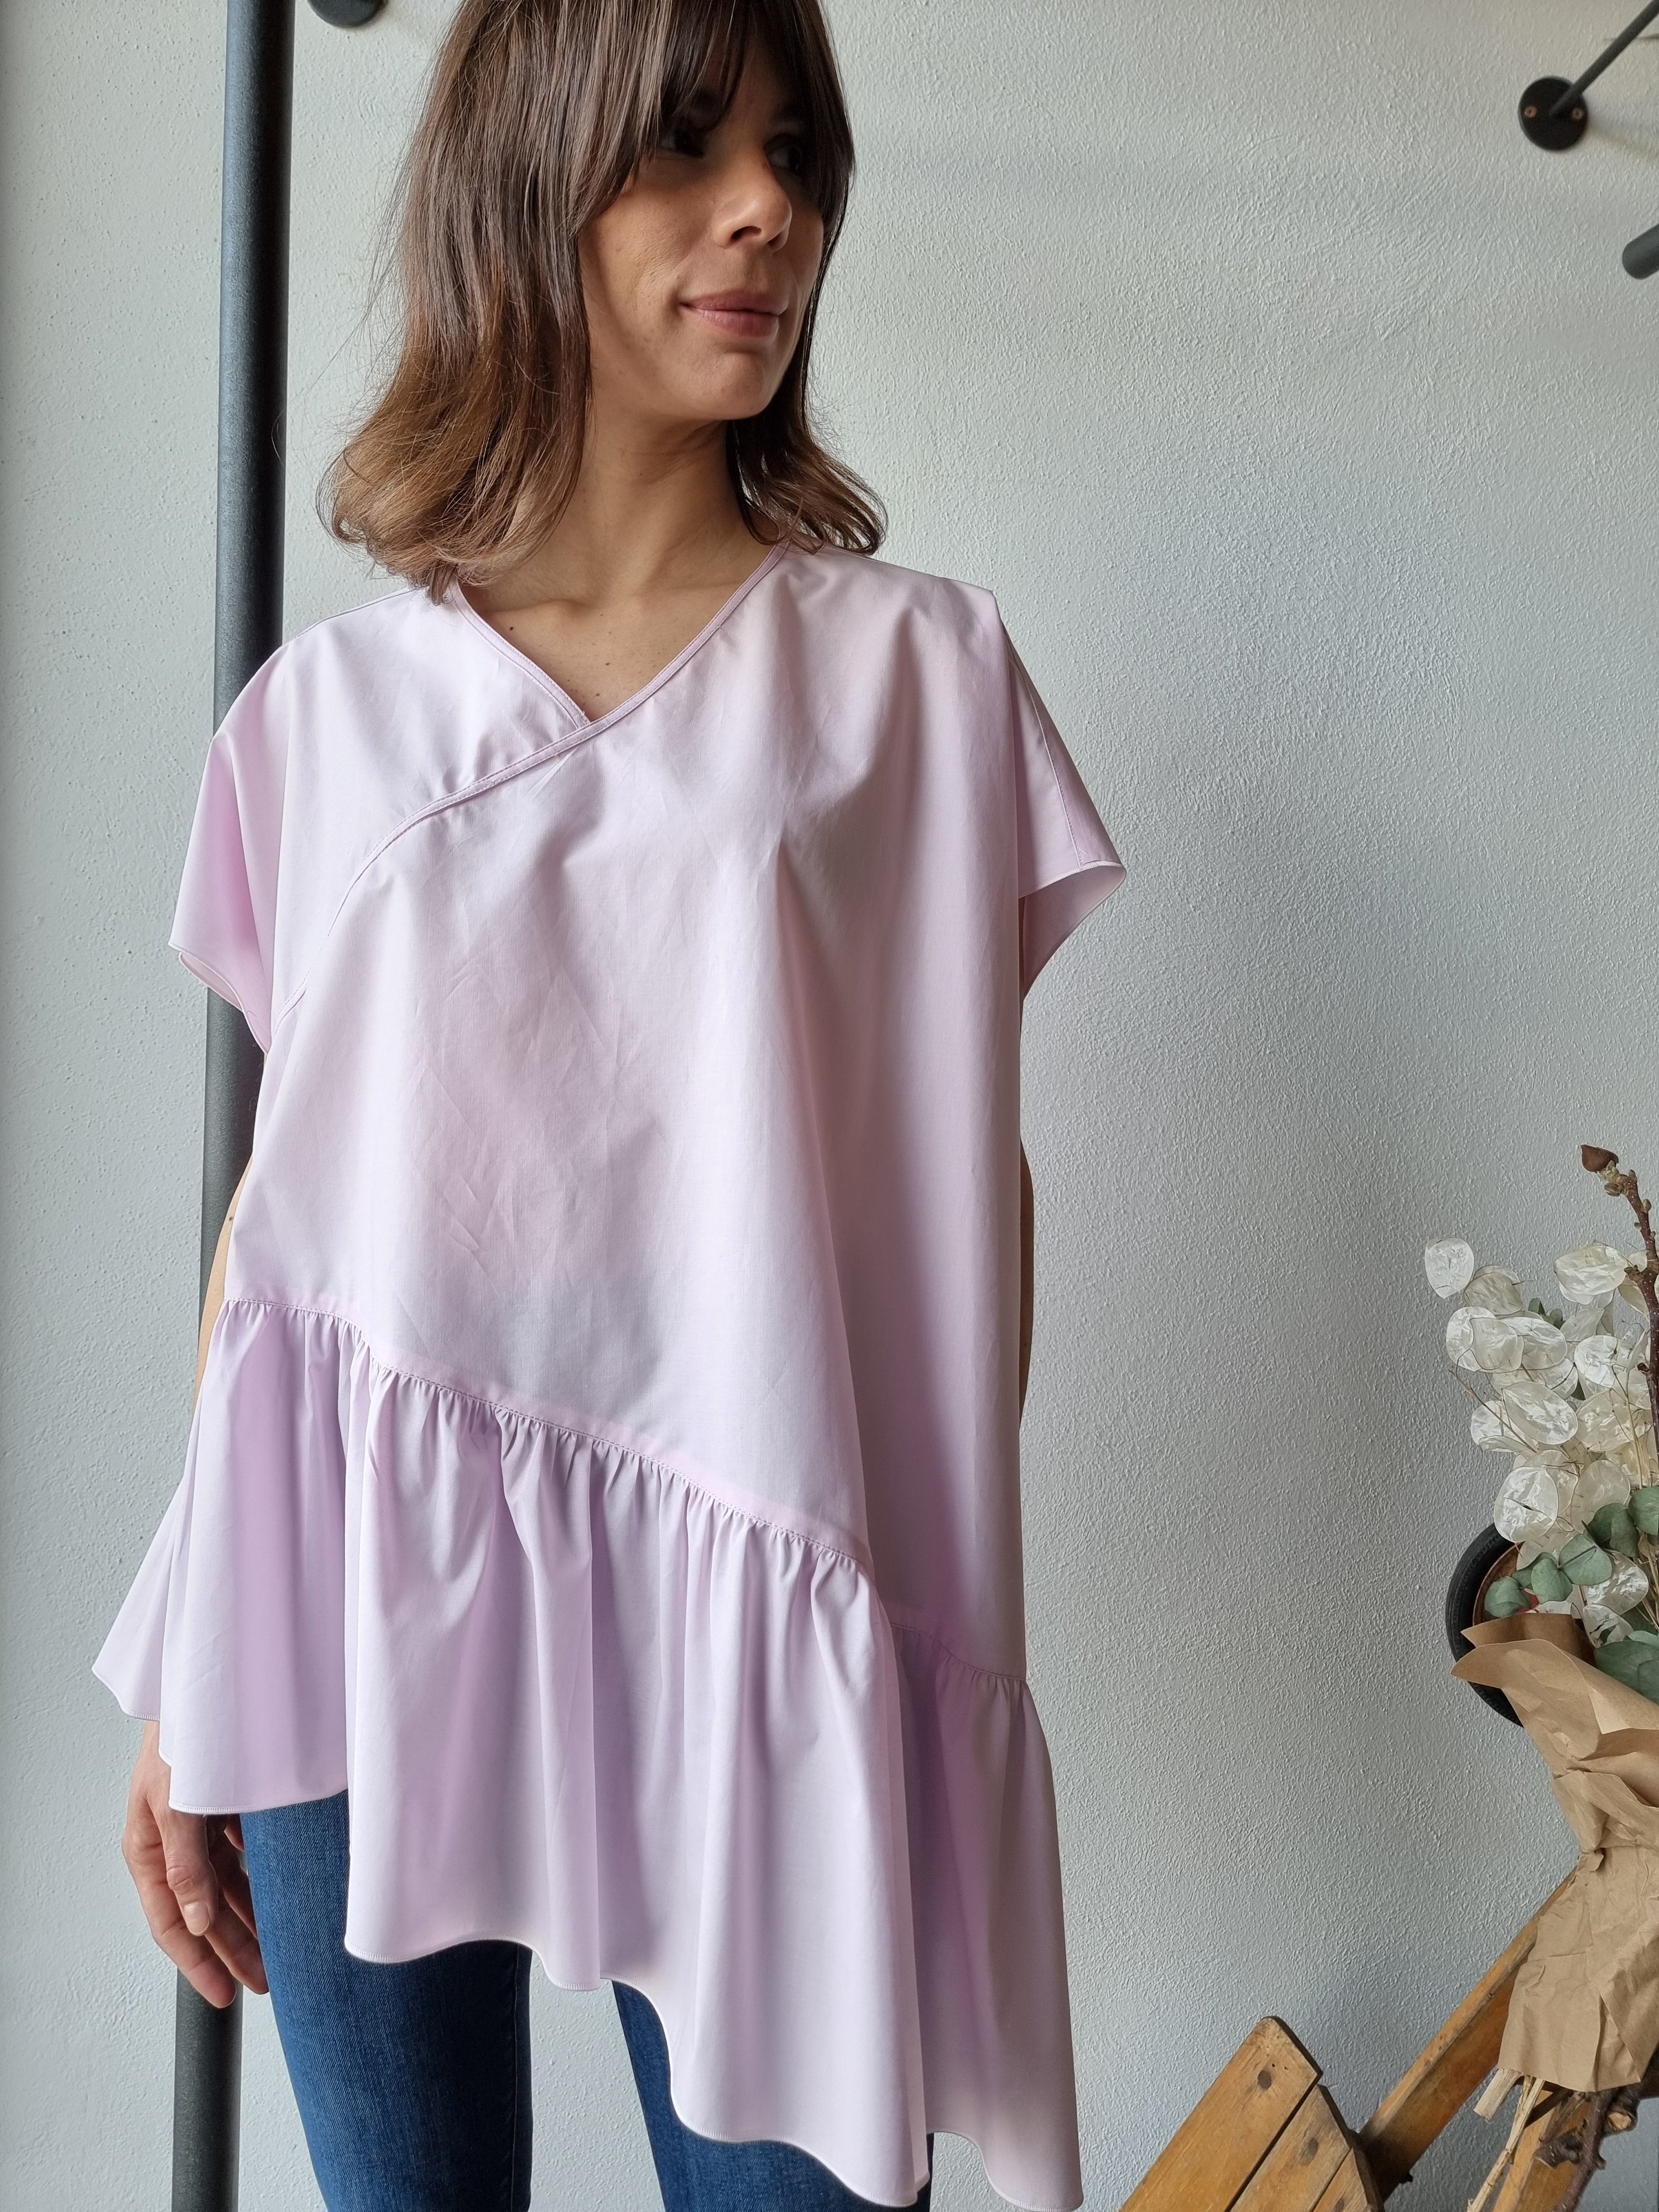 Aquilano Rimondi – Camicia asimmetrica rosa